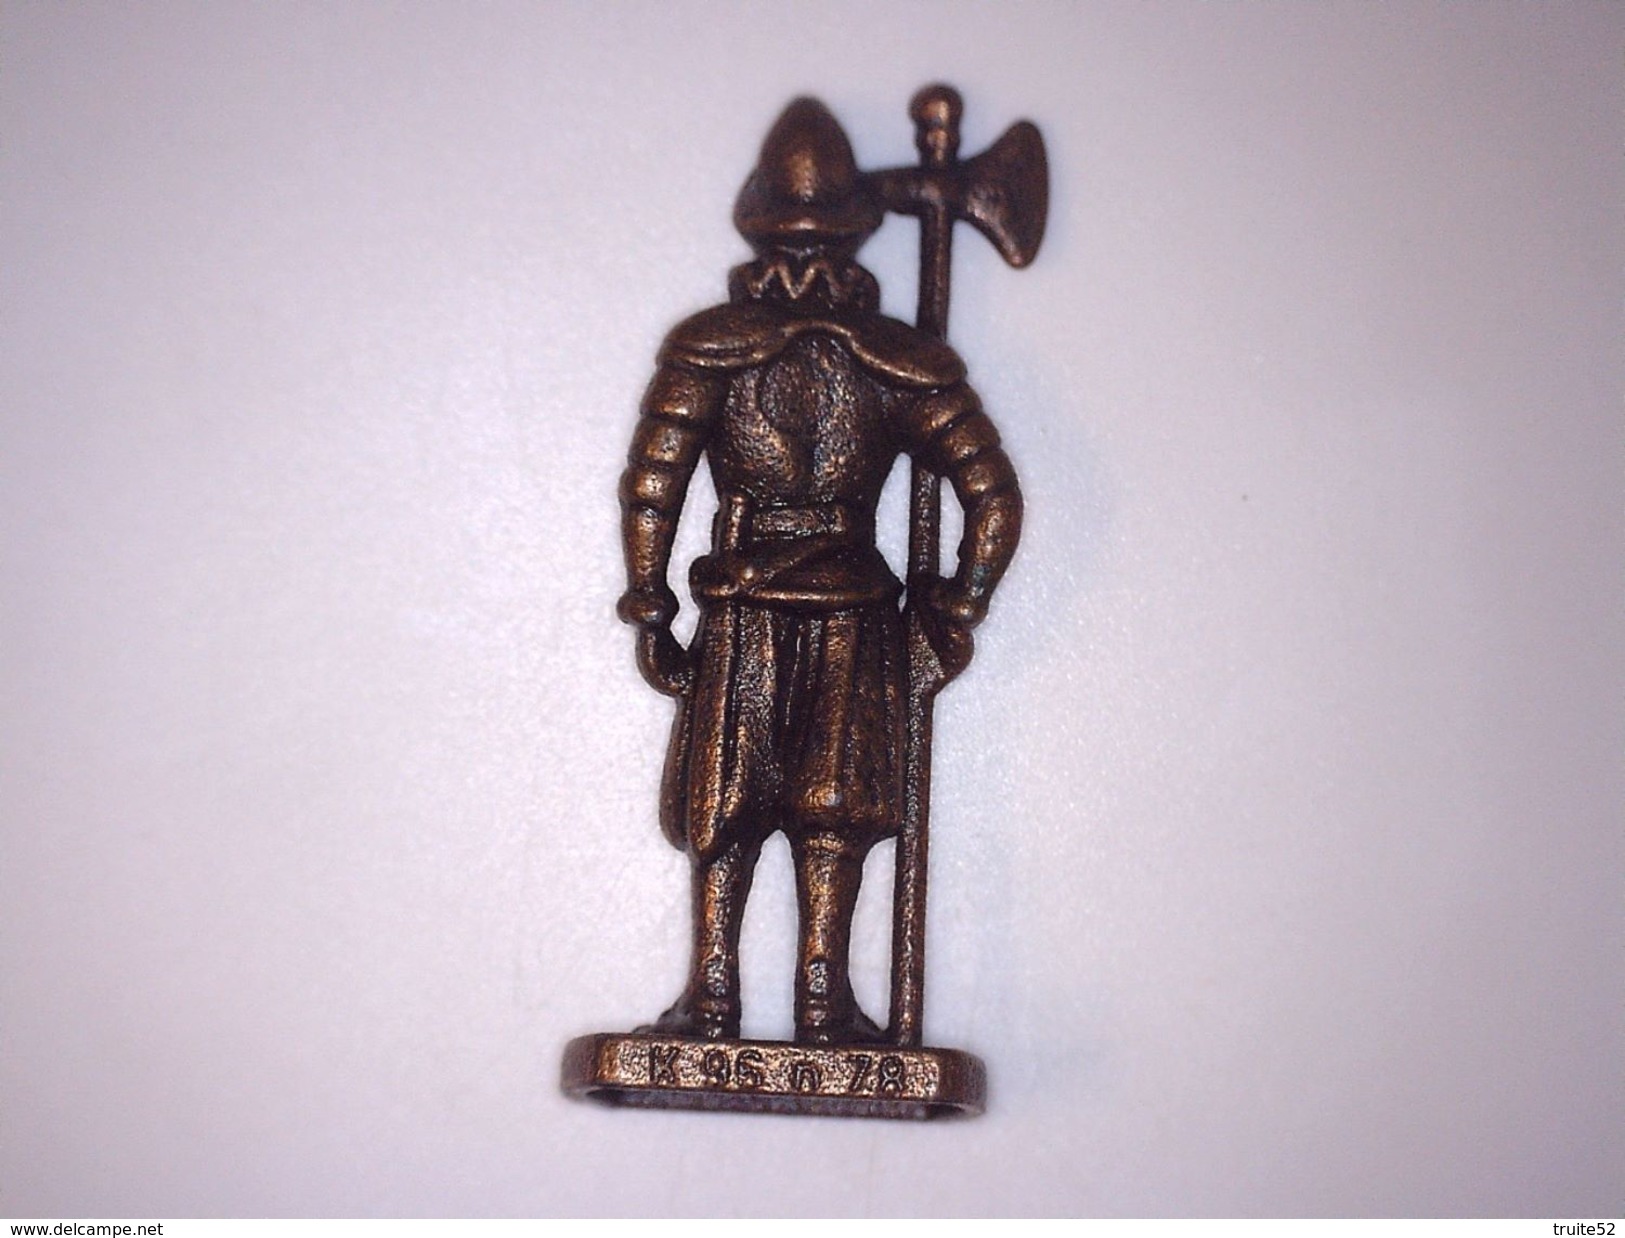 FIGURINE KINDER METAL SOLDAT SWISS (suisse) N°5 - Metal Figurines